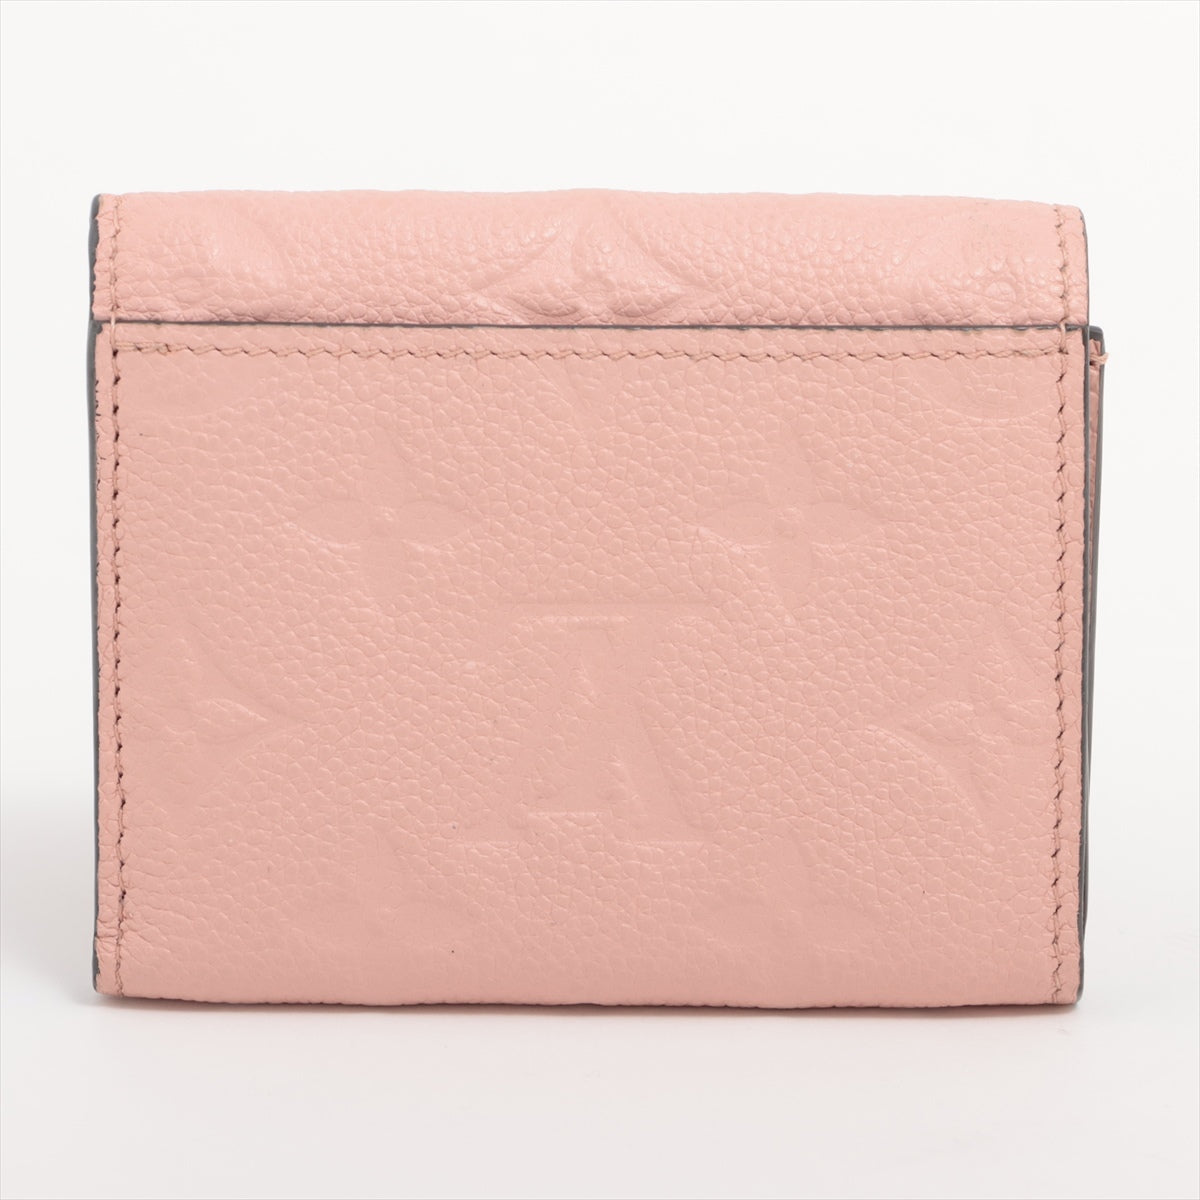 Louis Vuitton monogram empreinte Portefeuille Zoé M62936 SP2158 Rose poodle Compact Wallet